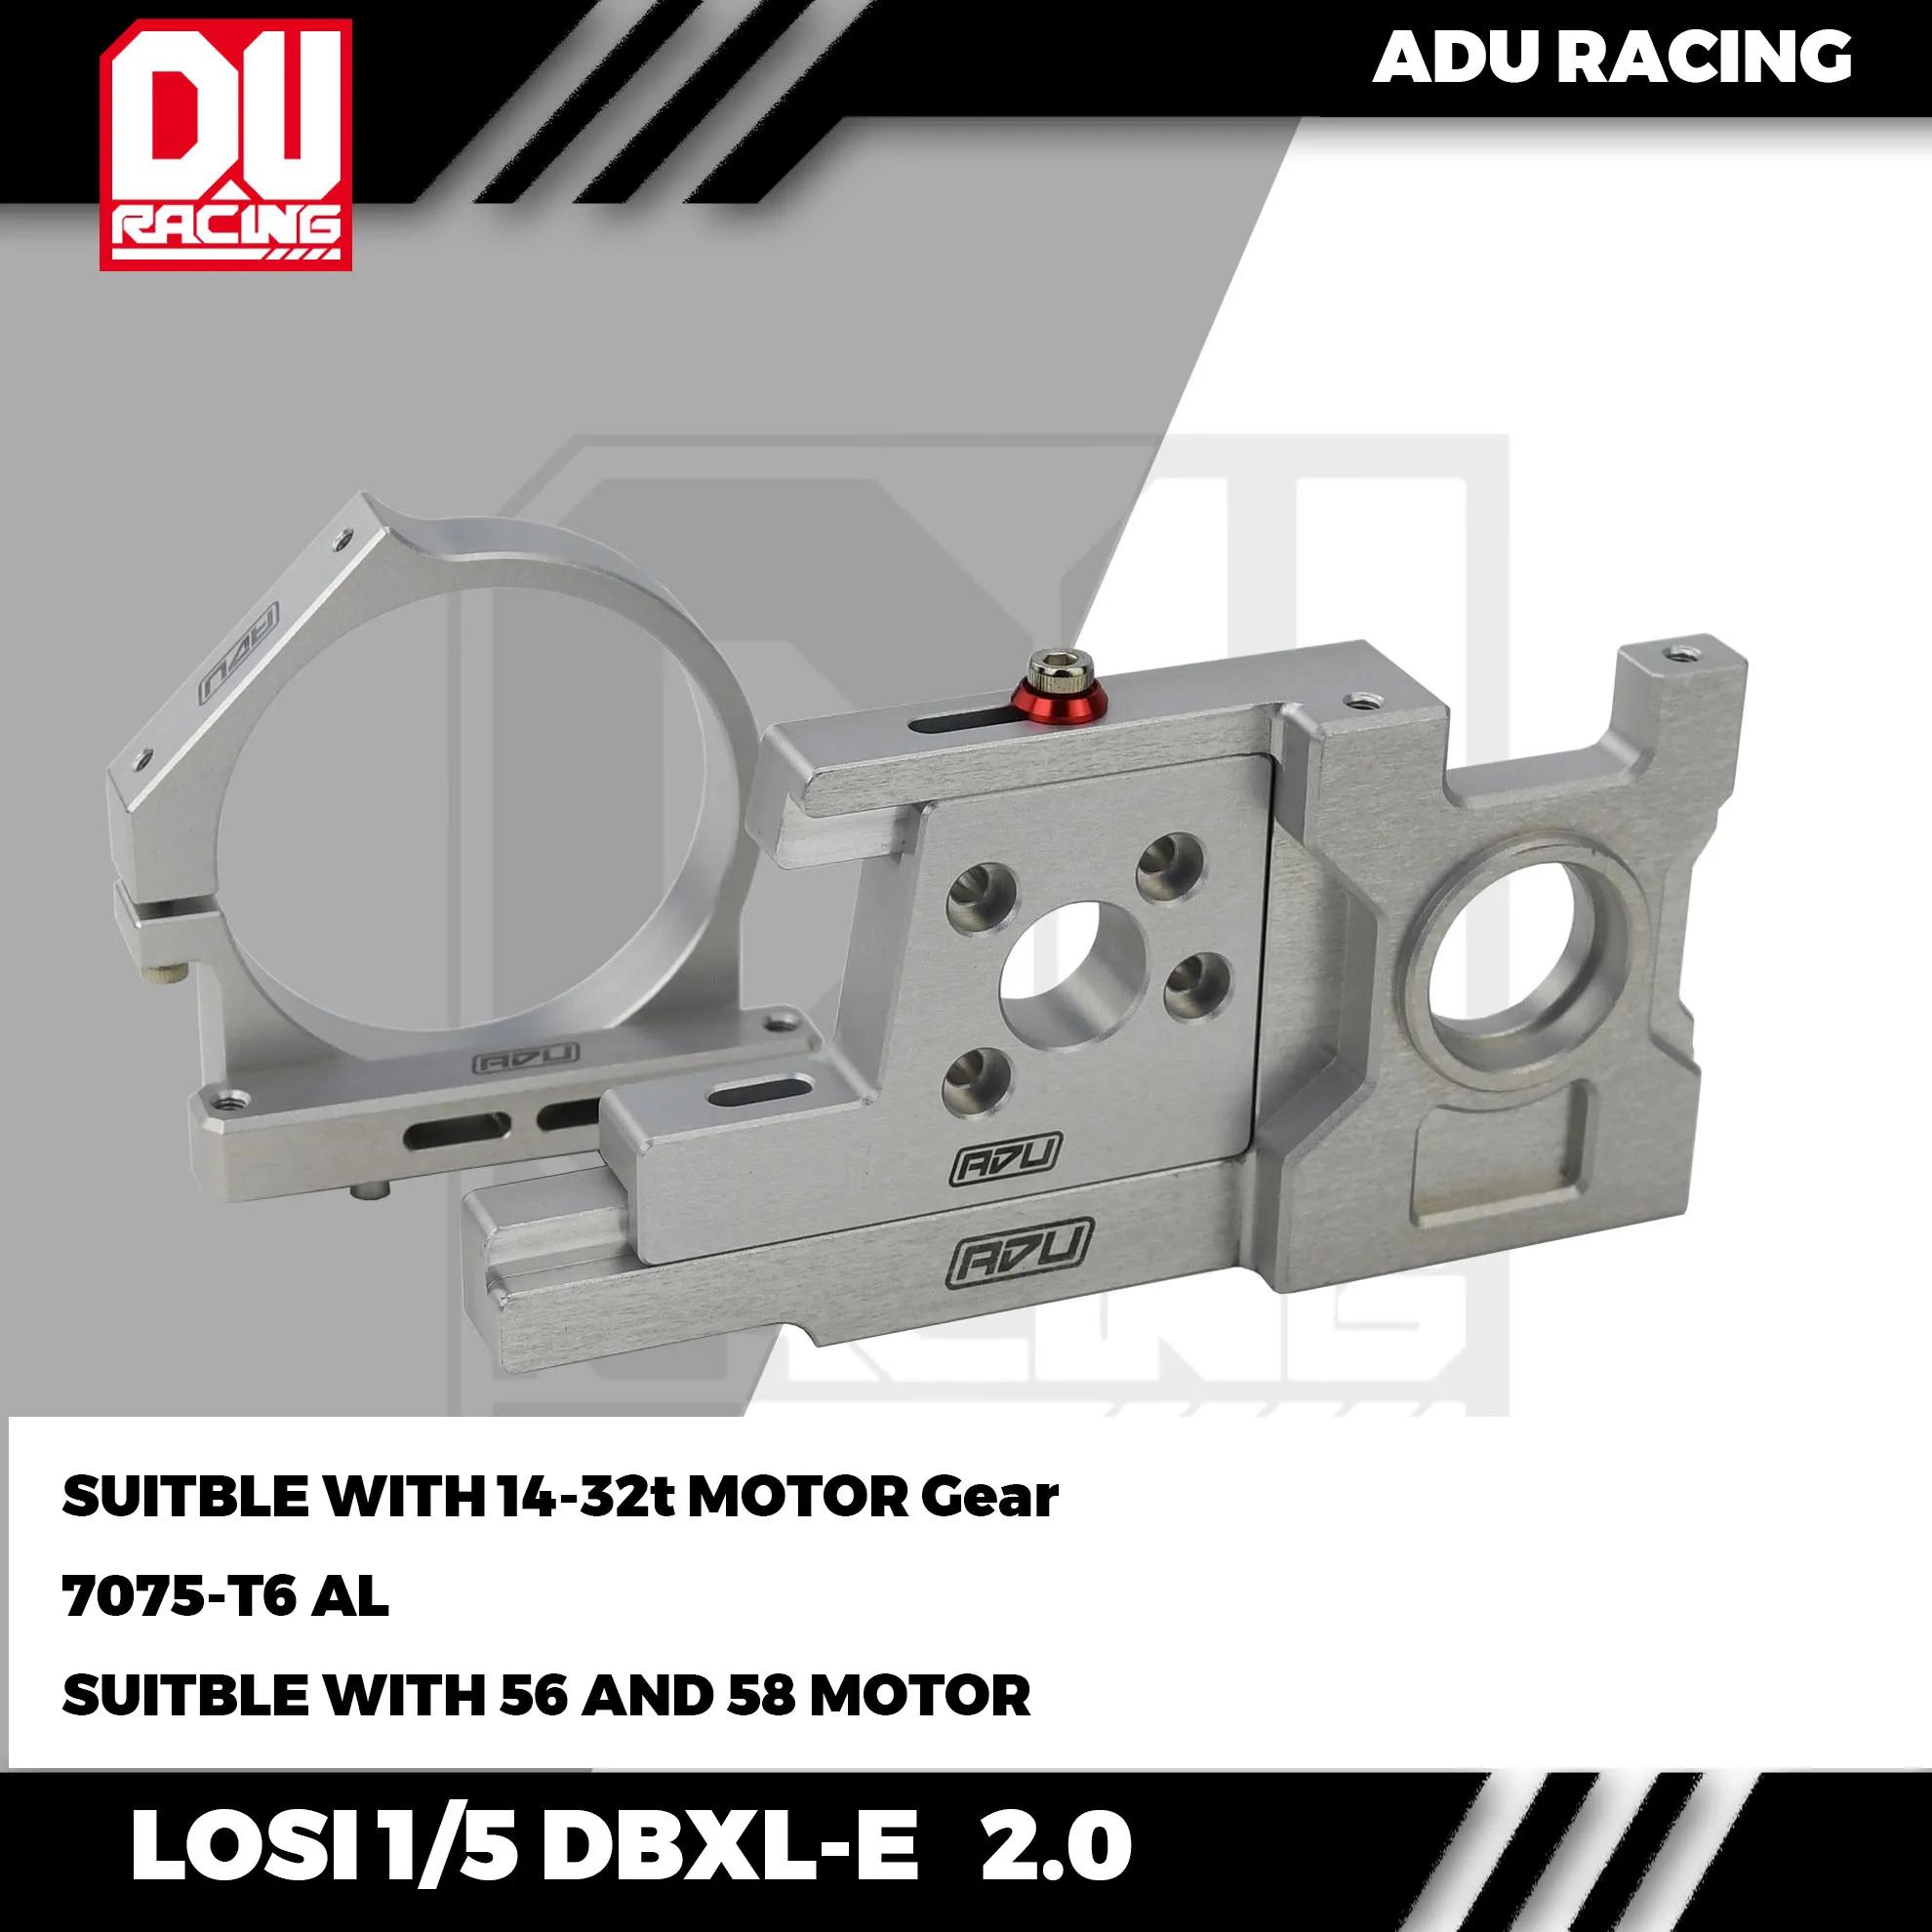 ADU 레이싱 모터 마운트 세트 및 테일 후프, LOSI 1/5 DBXL-E 2.0 LOS252064 용, 7075-T6